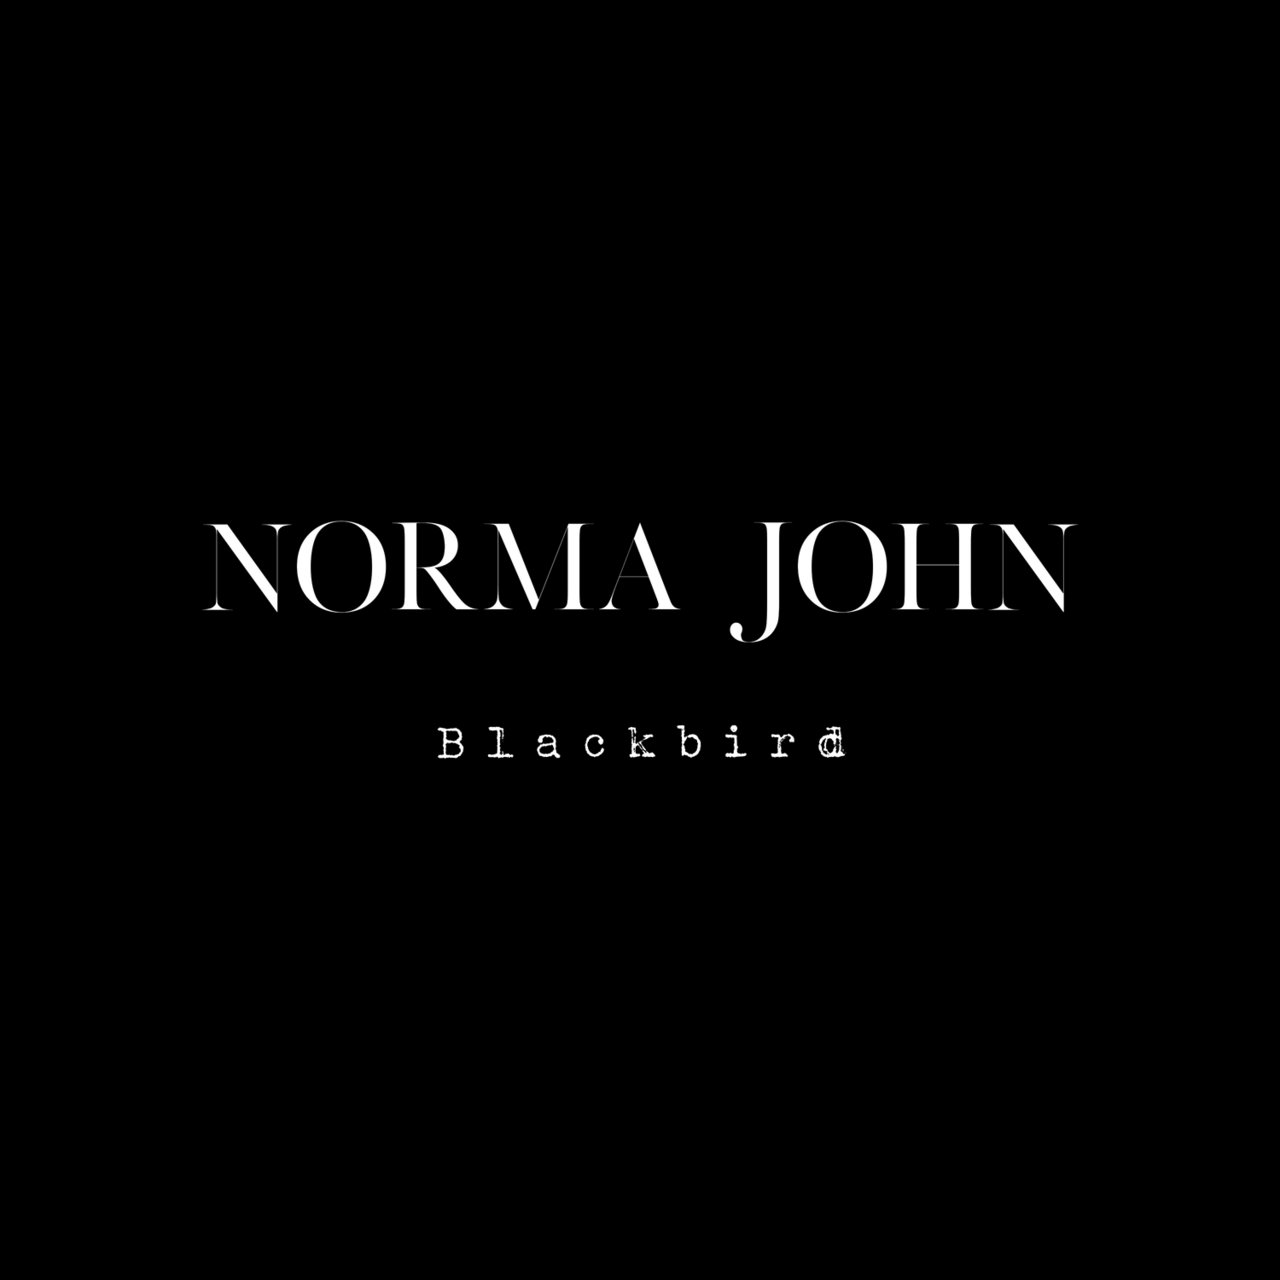 Norma John — Blackbird cover artwork